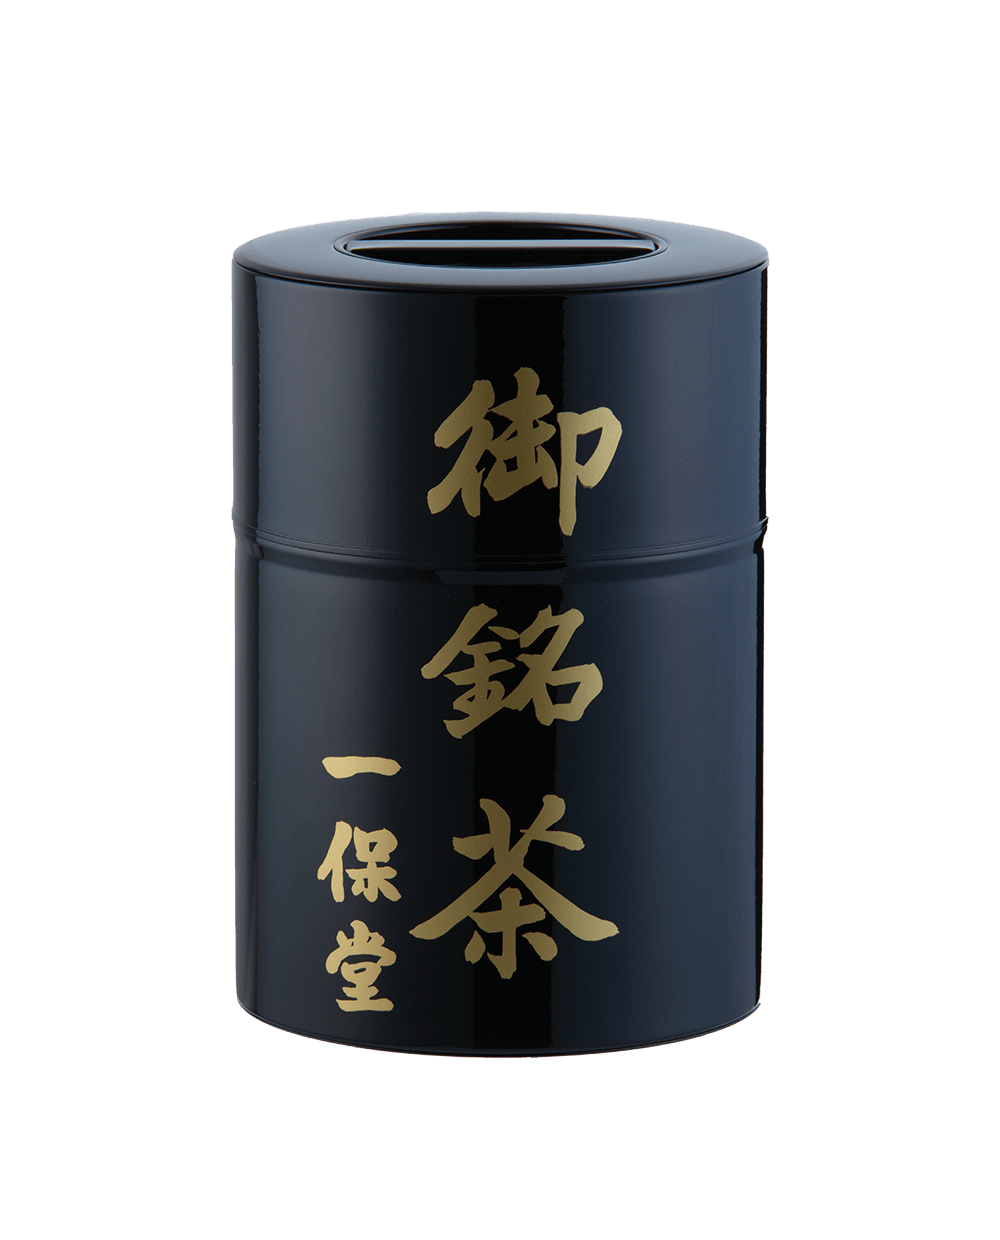 極上ほうじ茶手付き塗り缶箱(200g)